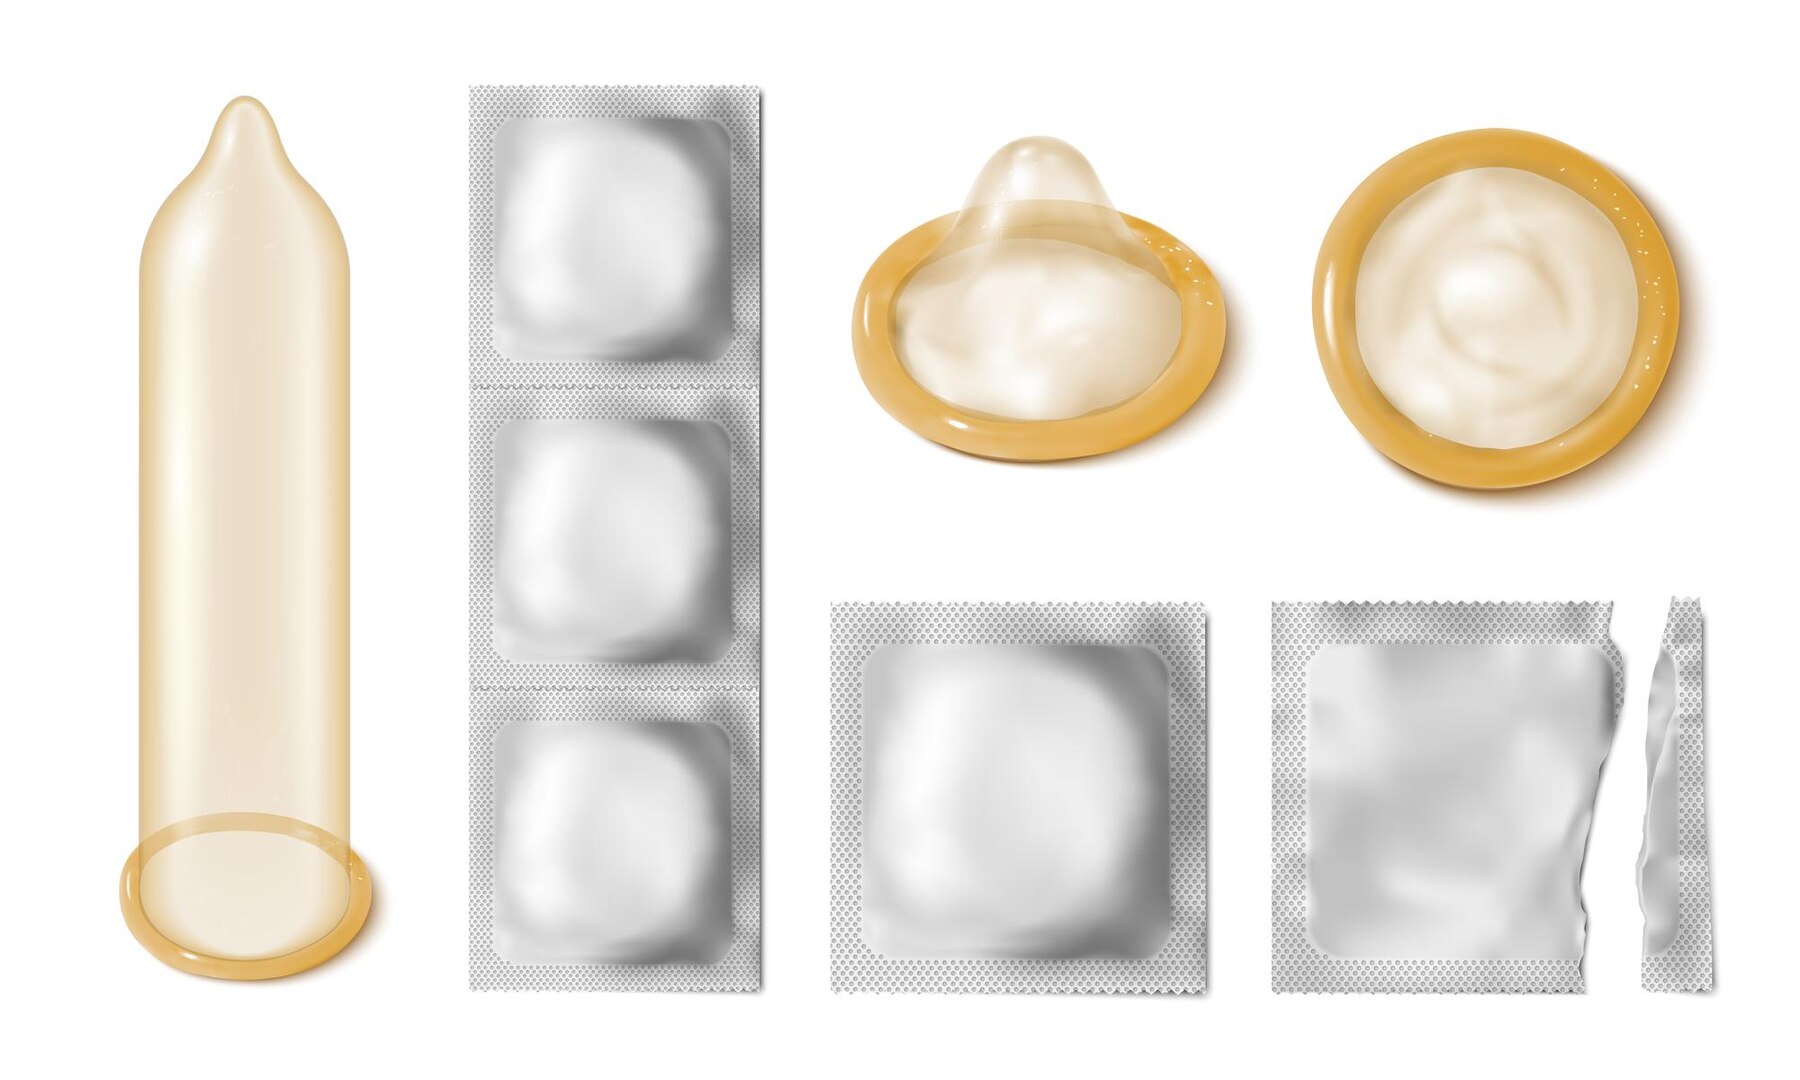 obrázek kondomů